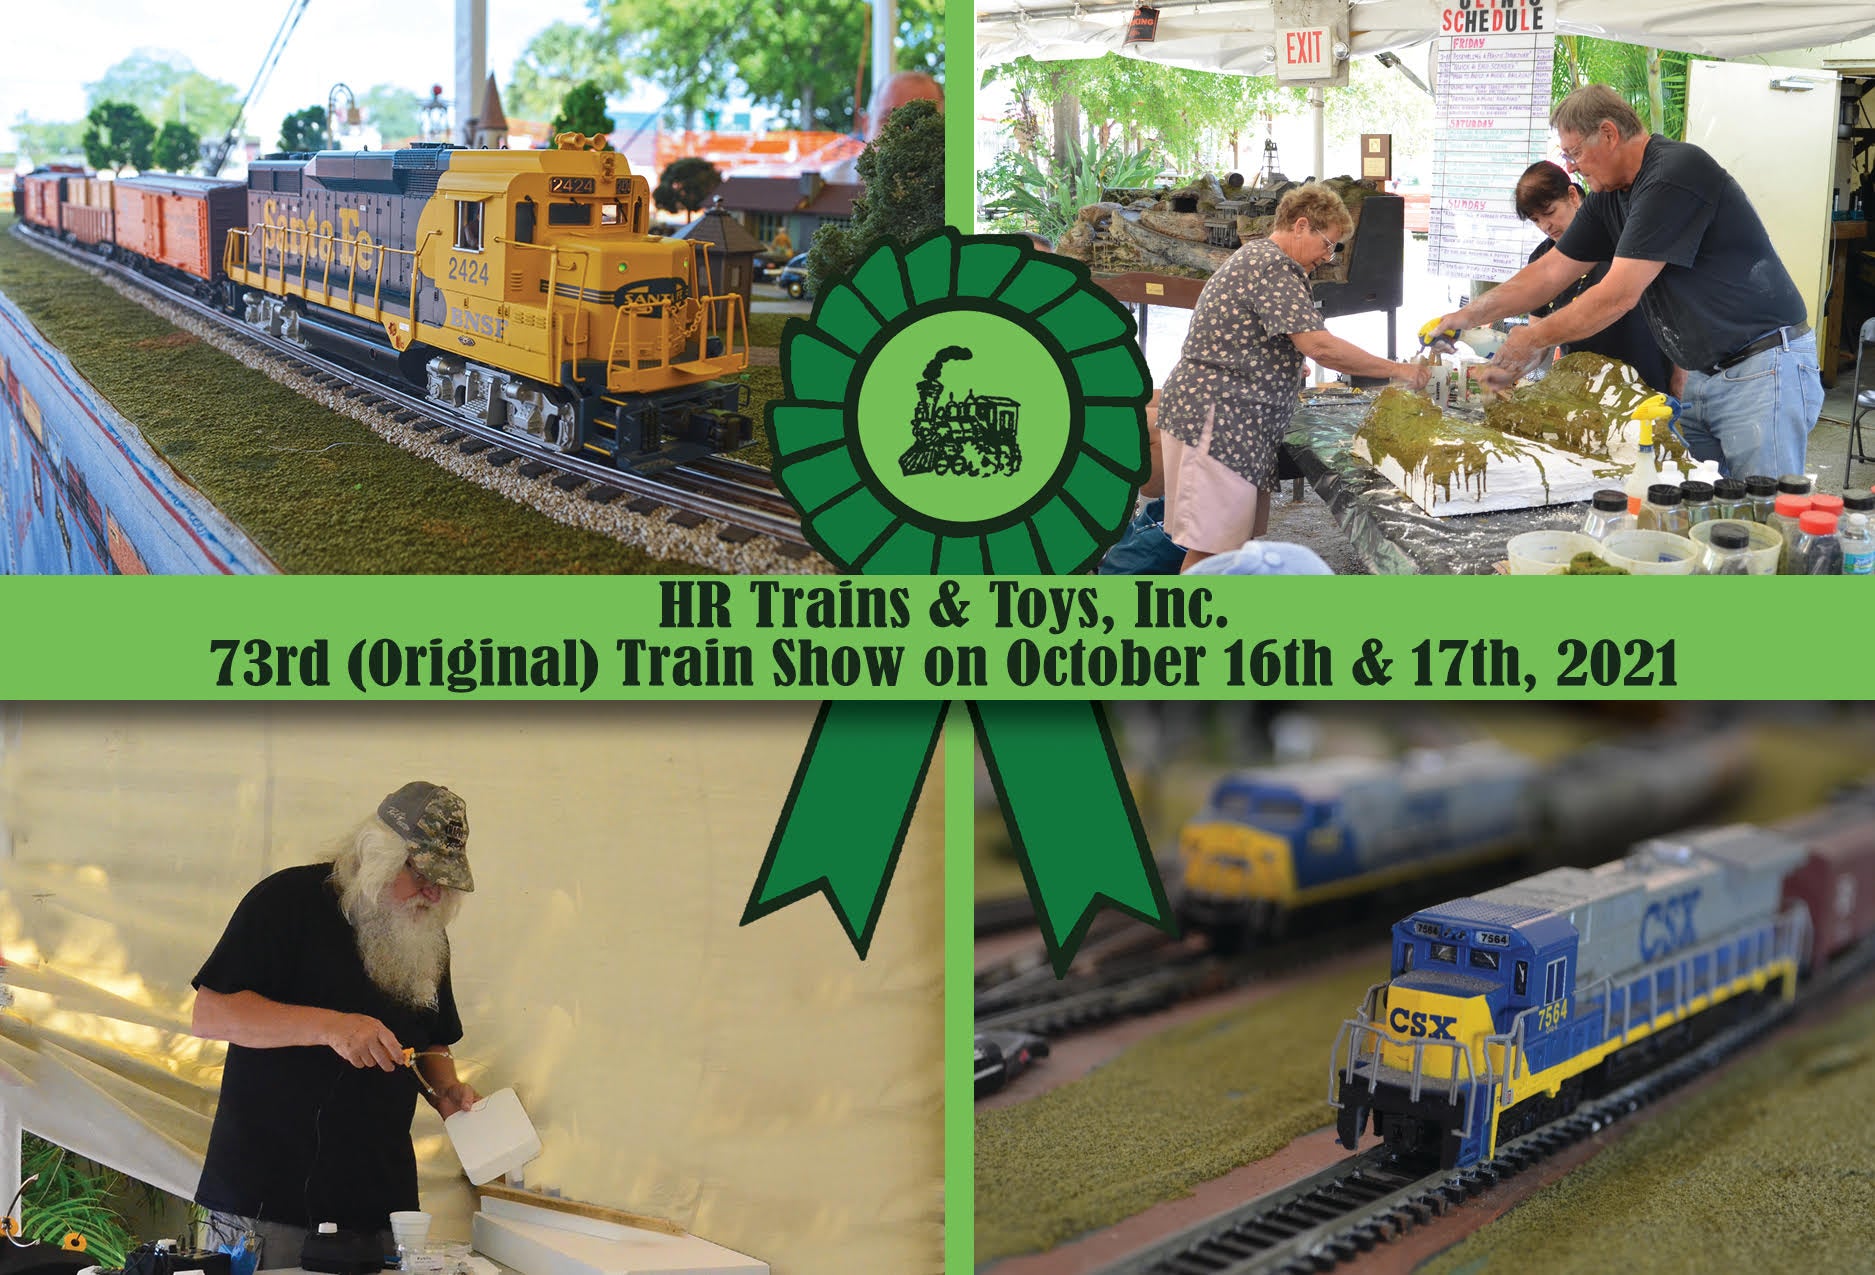 HR Trains & Toys 73rd Train Show, 2021!